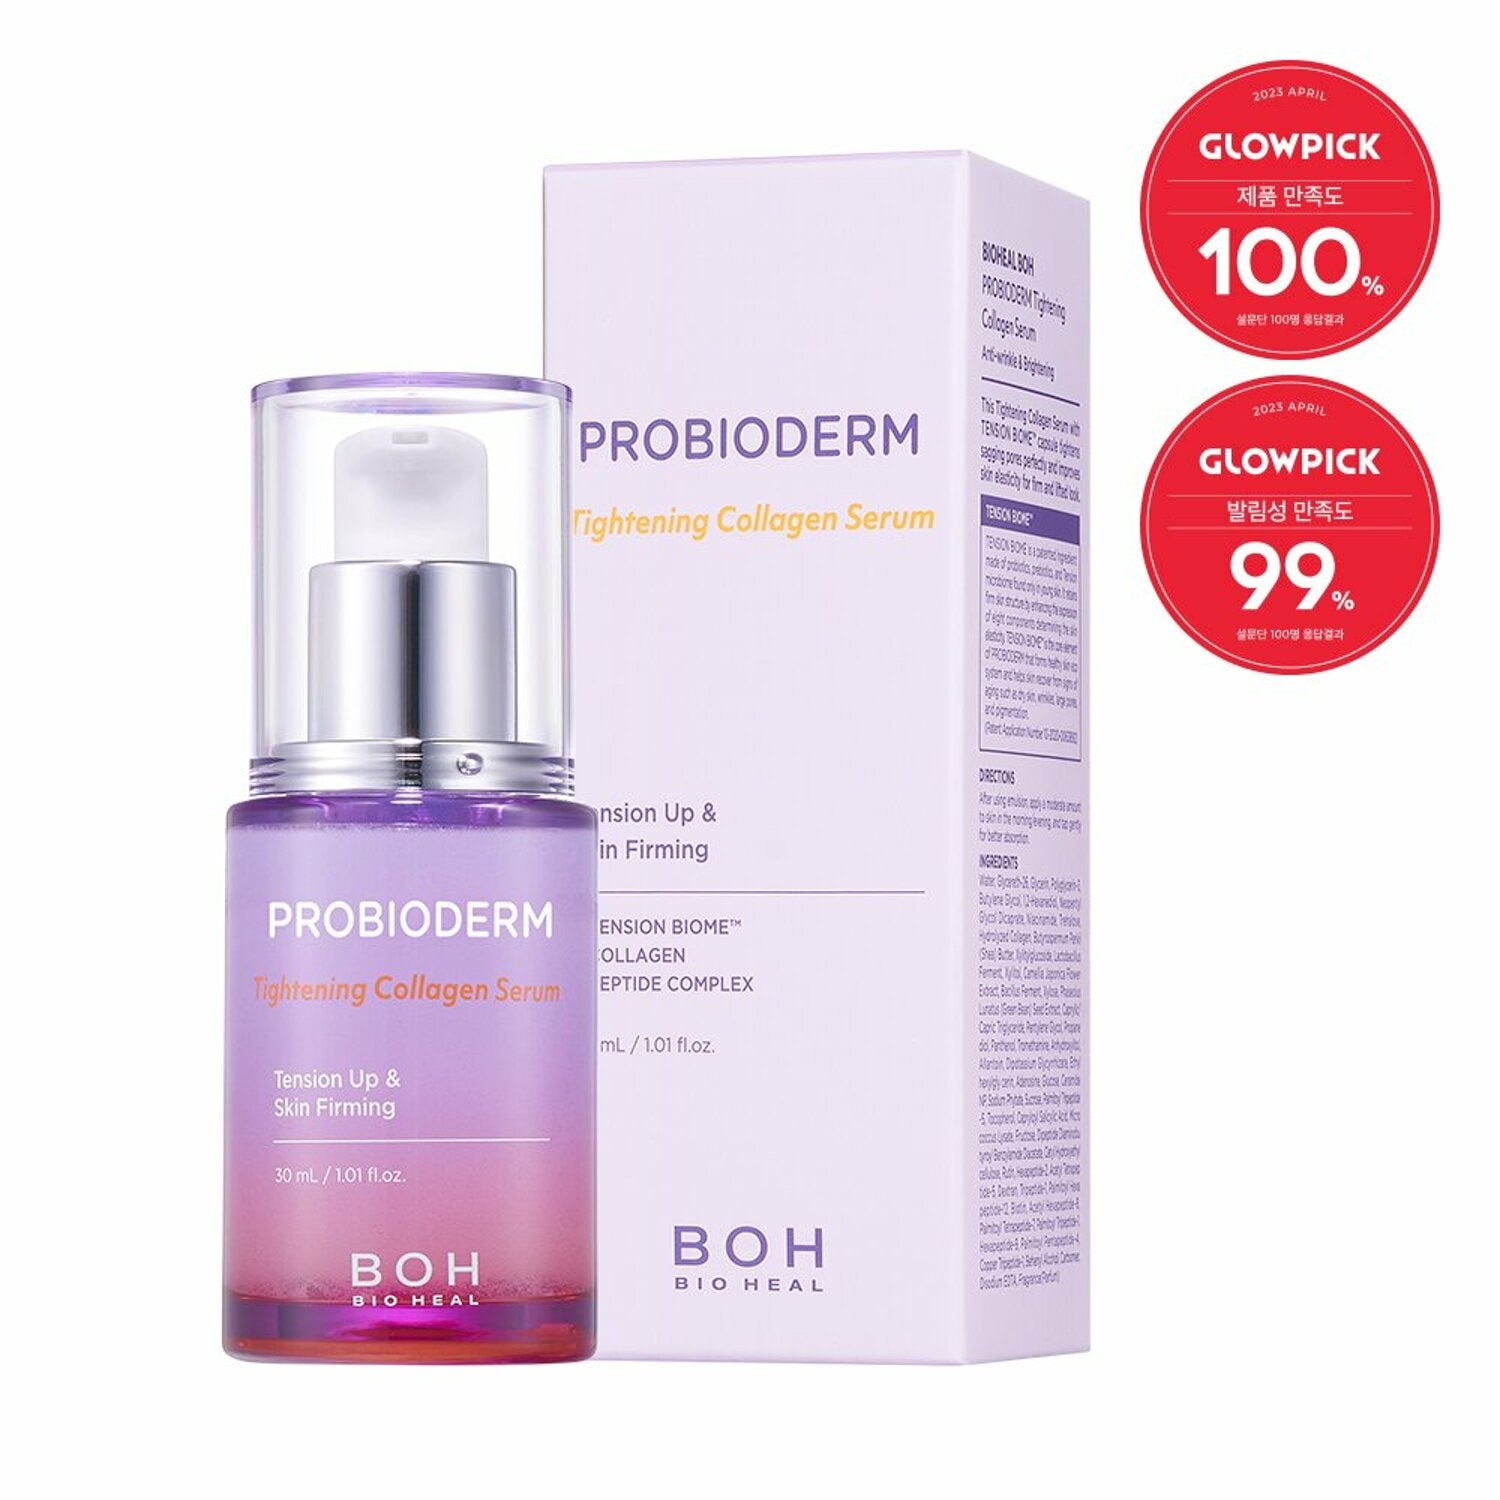 BIOHEAL BOH Probioderm Tightening Collagen Serum 30mL - DODOSKIN